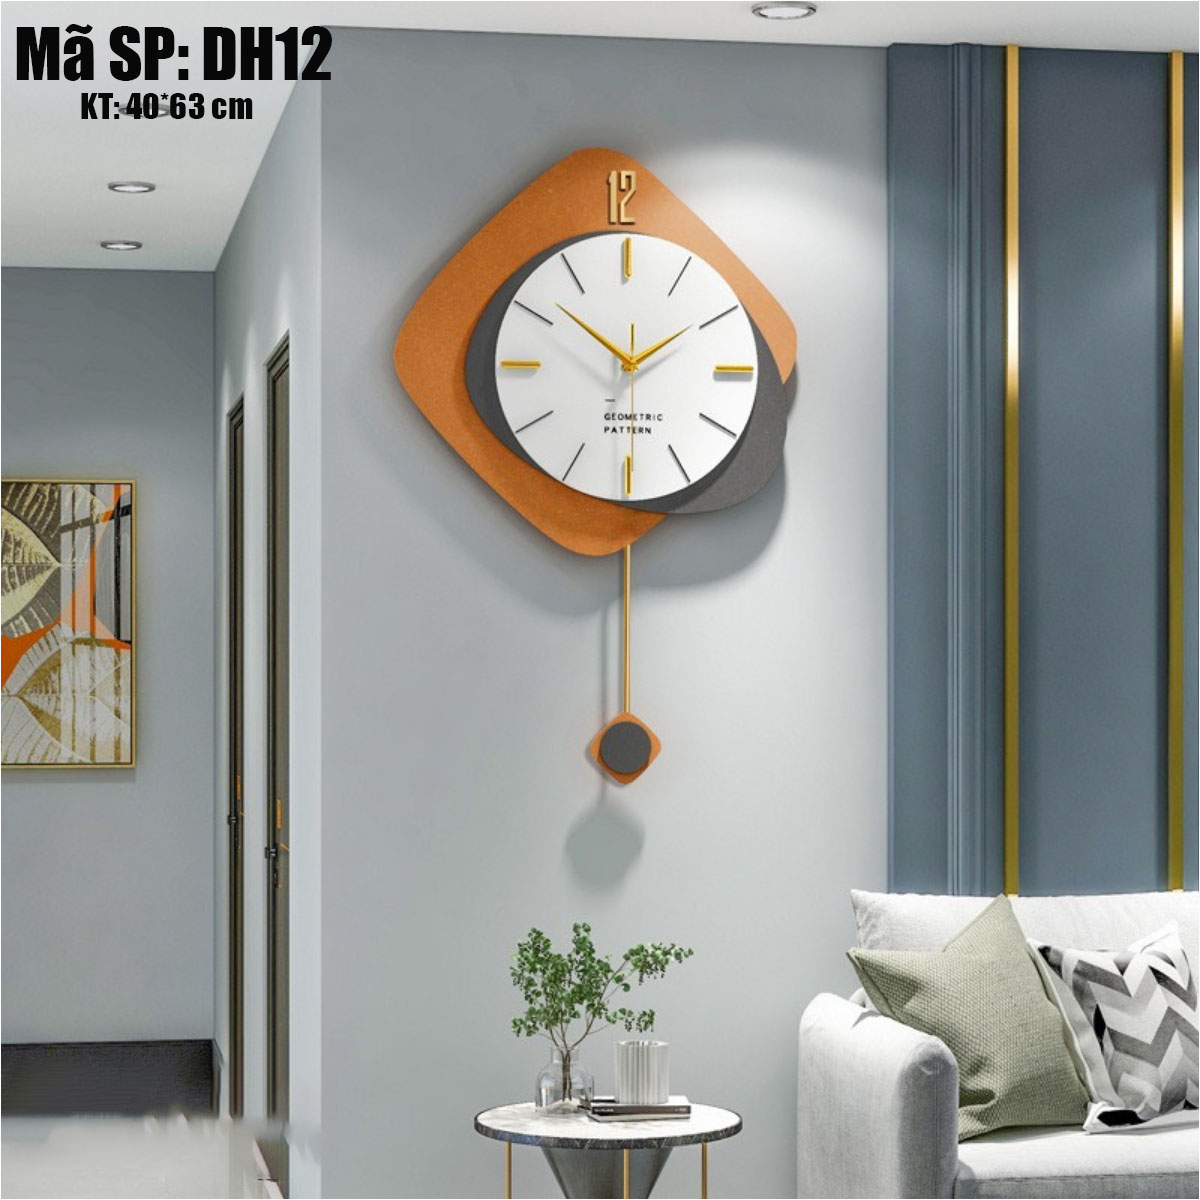 Đồng hồ treo tường hiện đại - Đồng hồ treo tường cao cấp sang trọng - Mã DH12